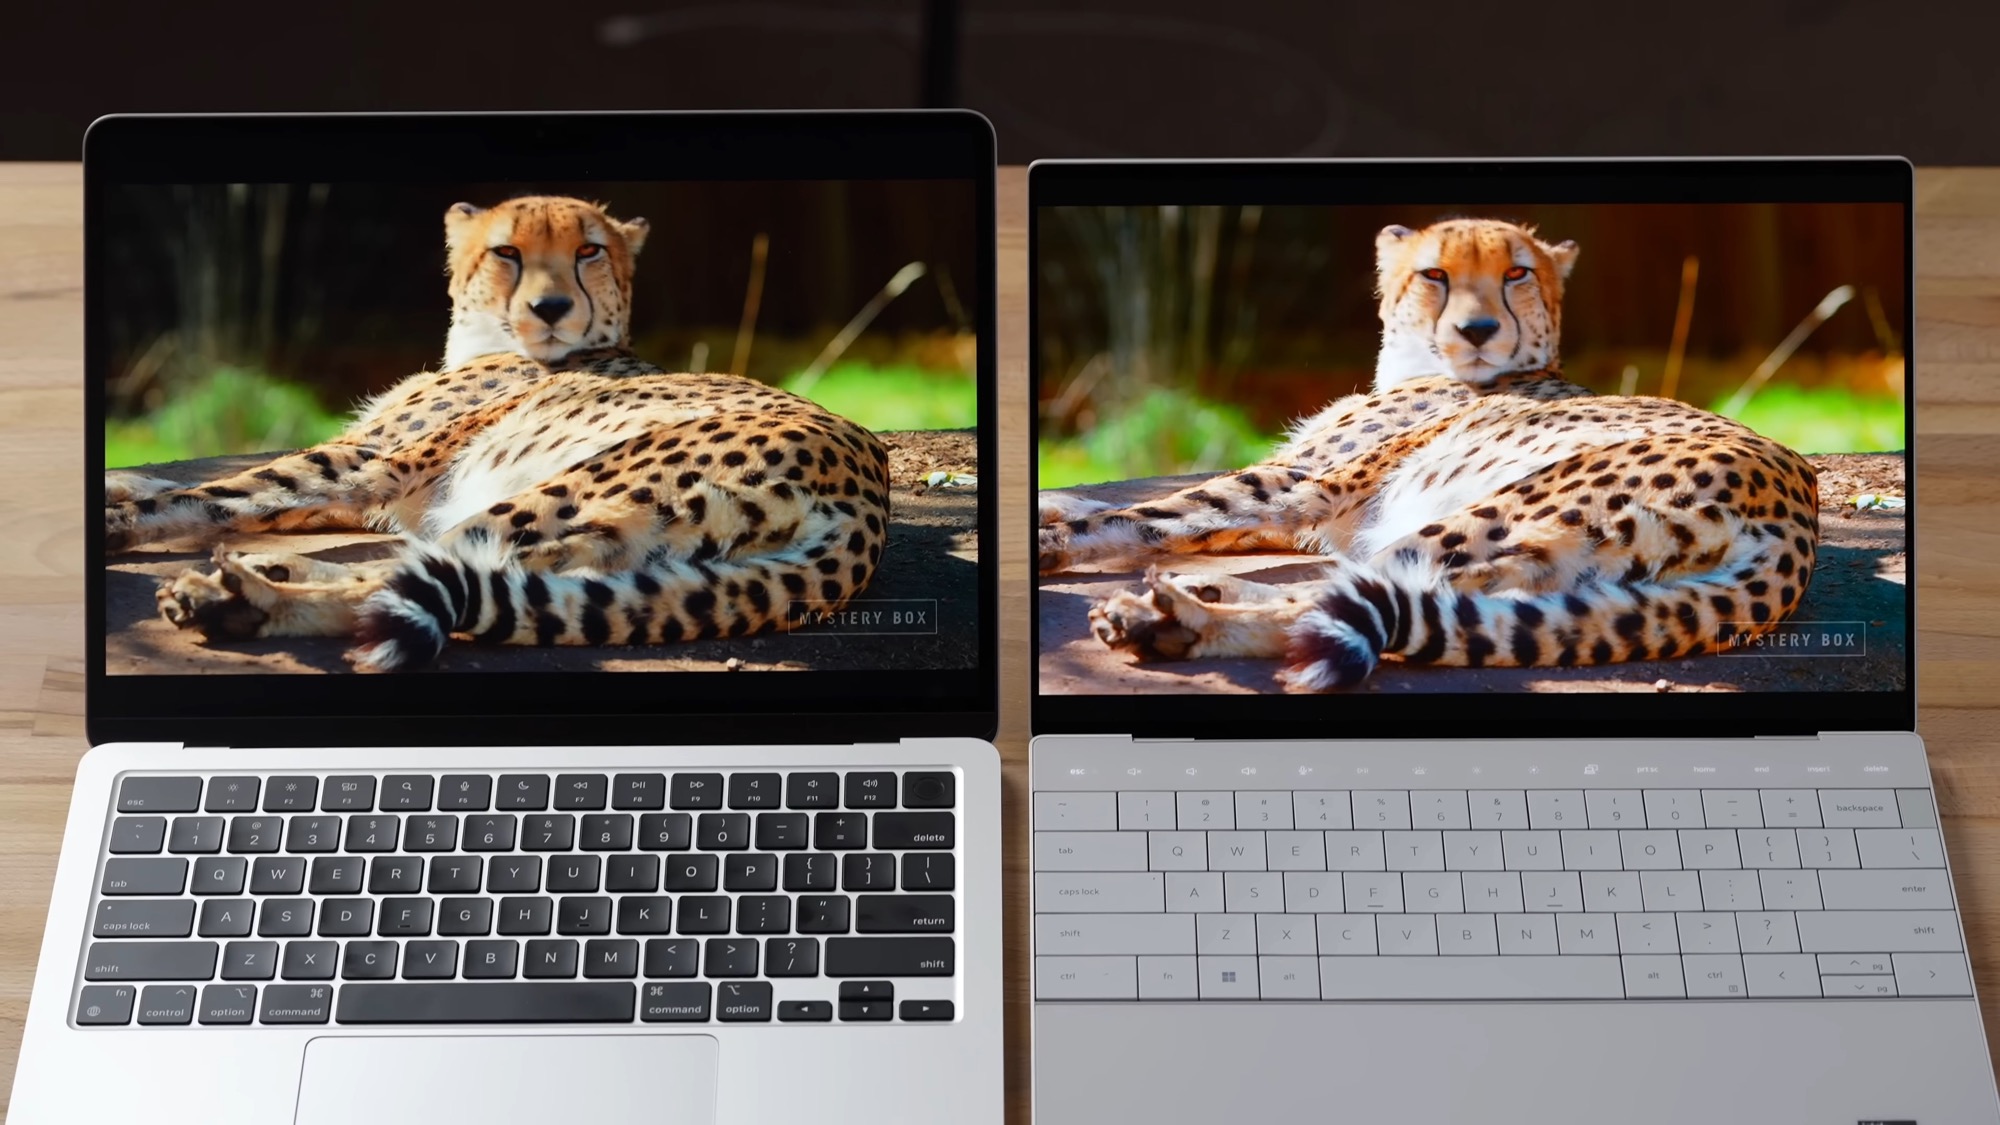 Entre le MacBook Air et le MacBook Pro, lequel choisir ? - Tech